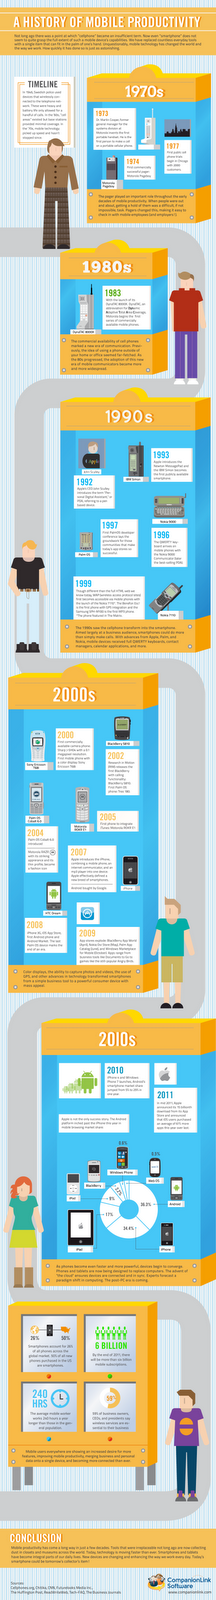 Smartphones et productivité : historique et tendances